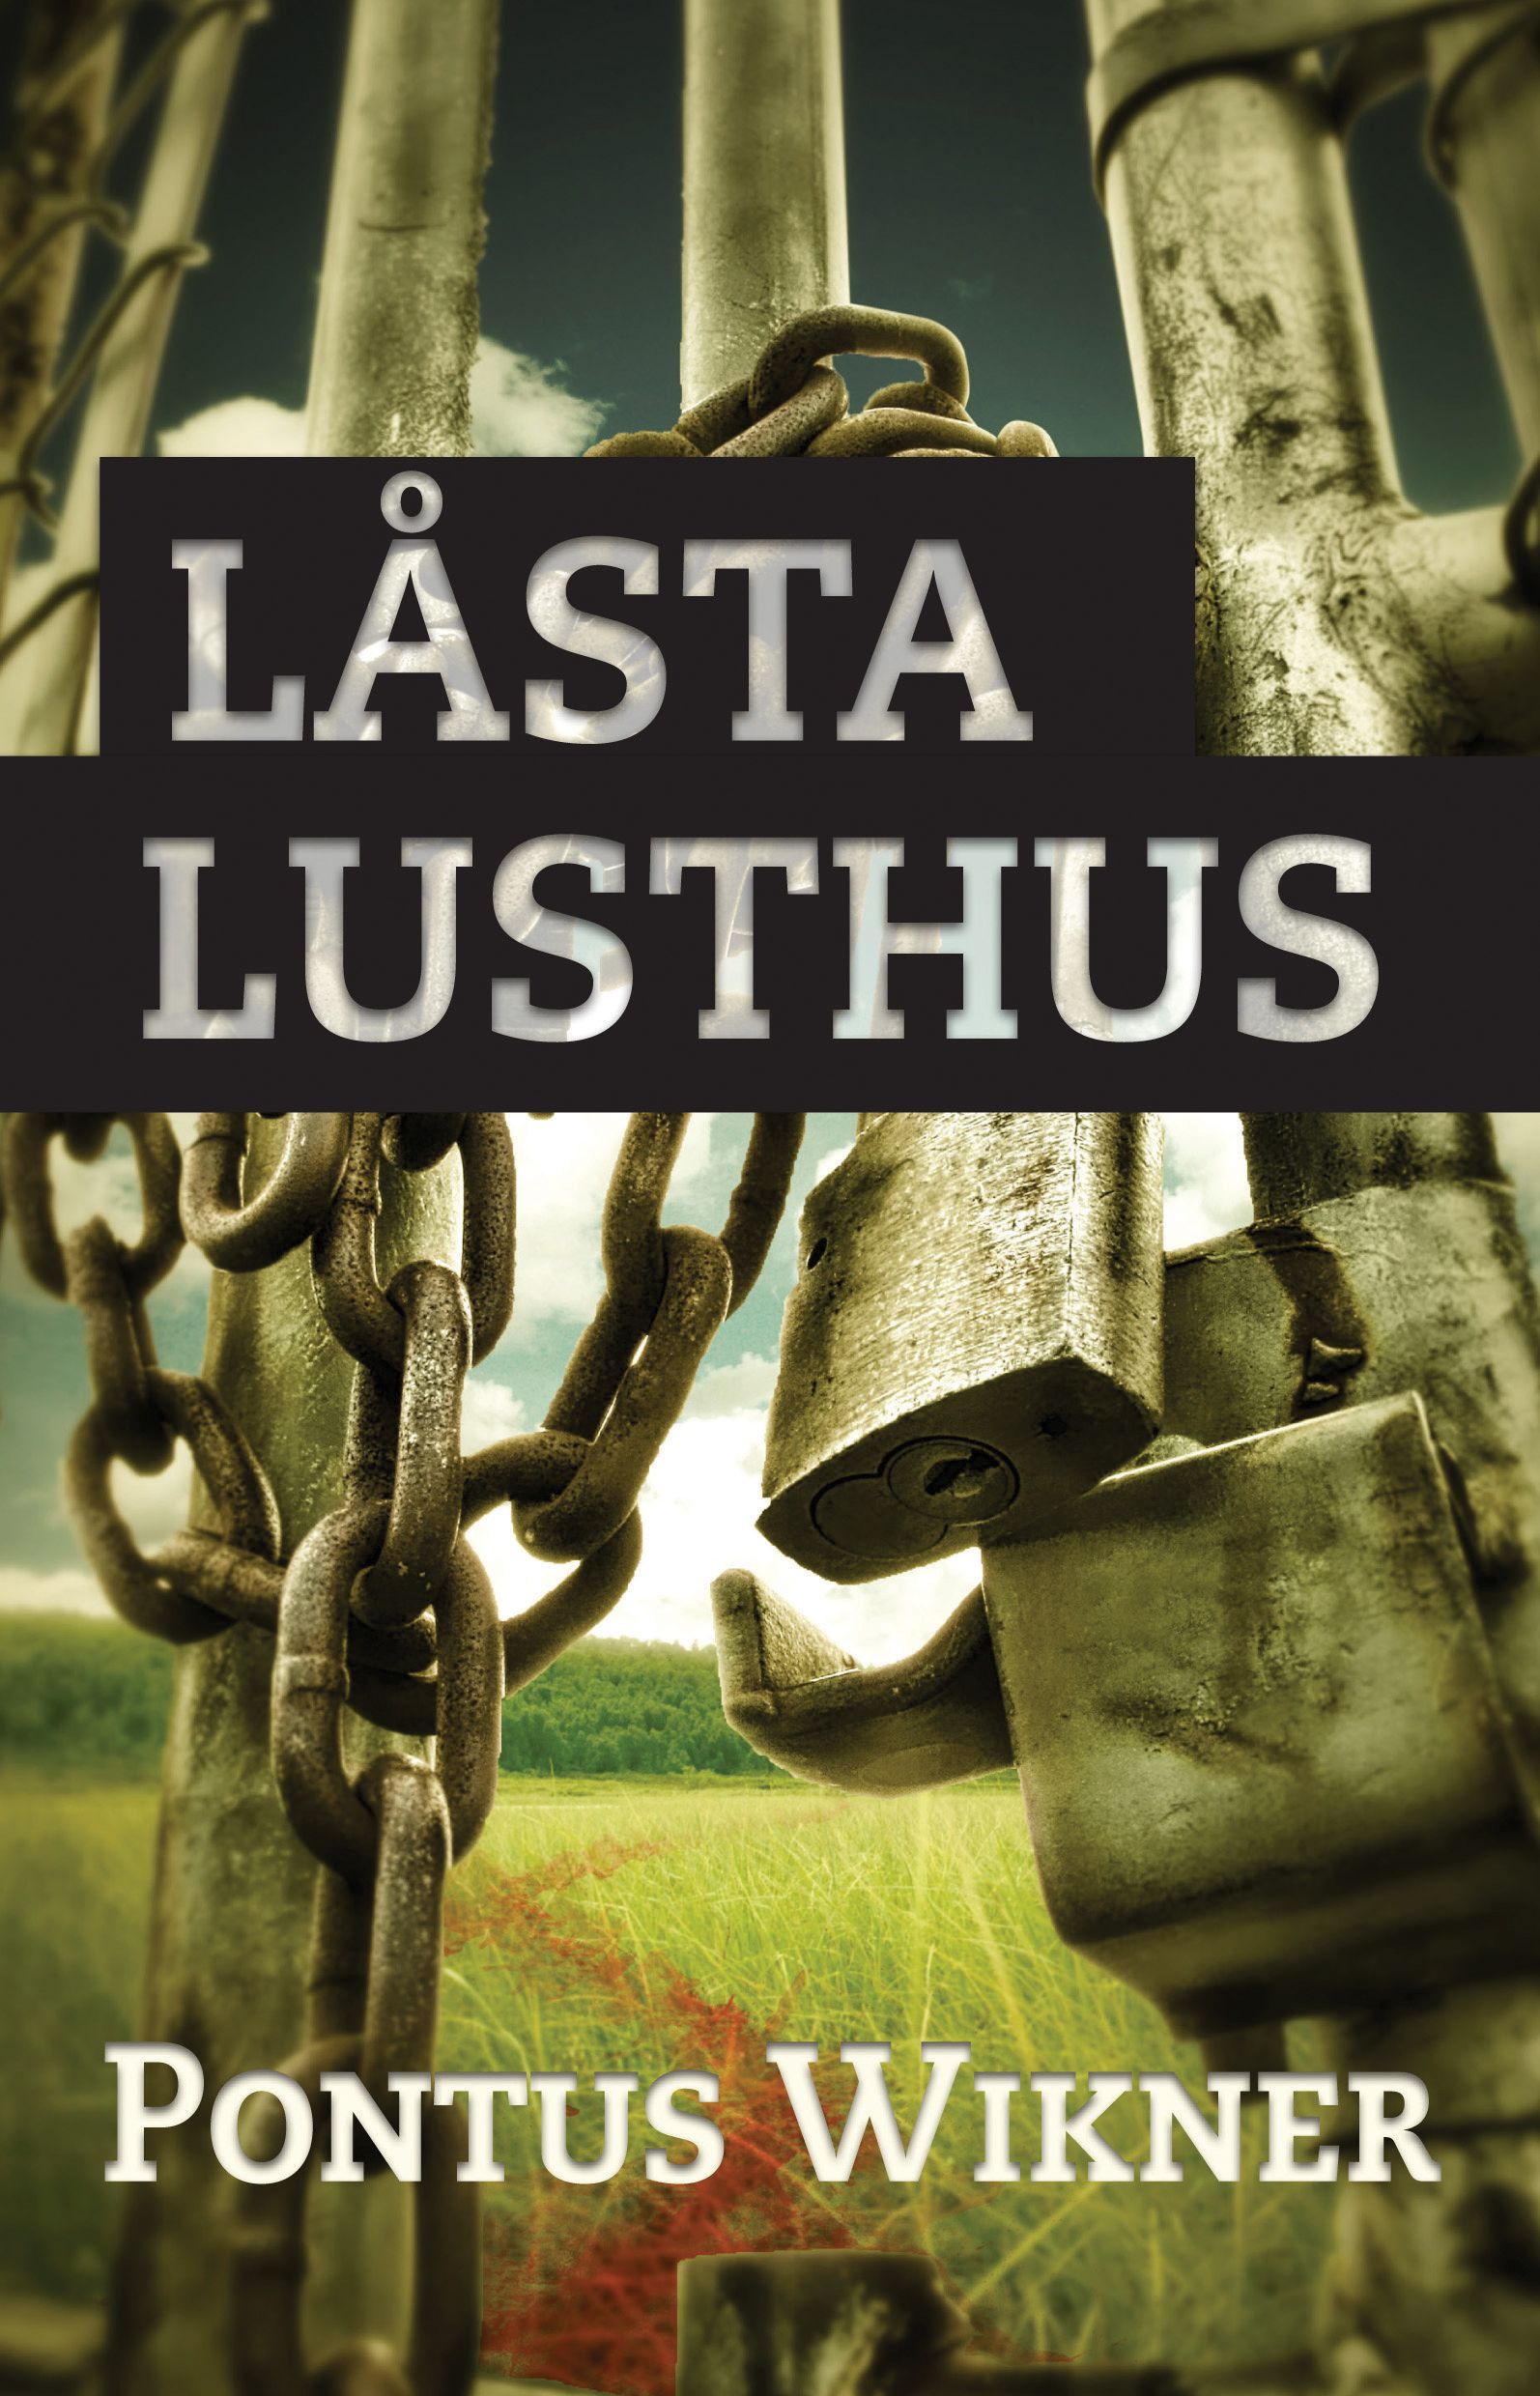 Låsta lusthus, e-bog af Pontus Wikner